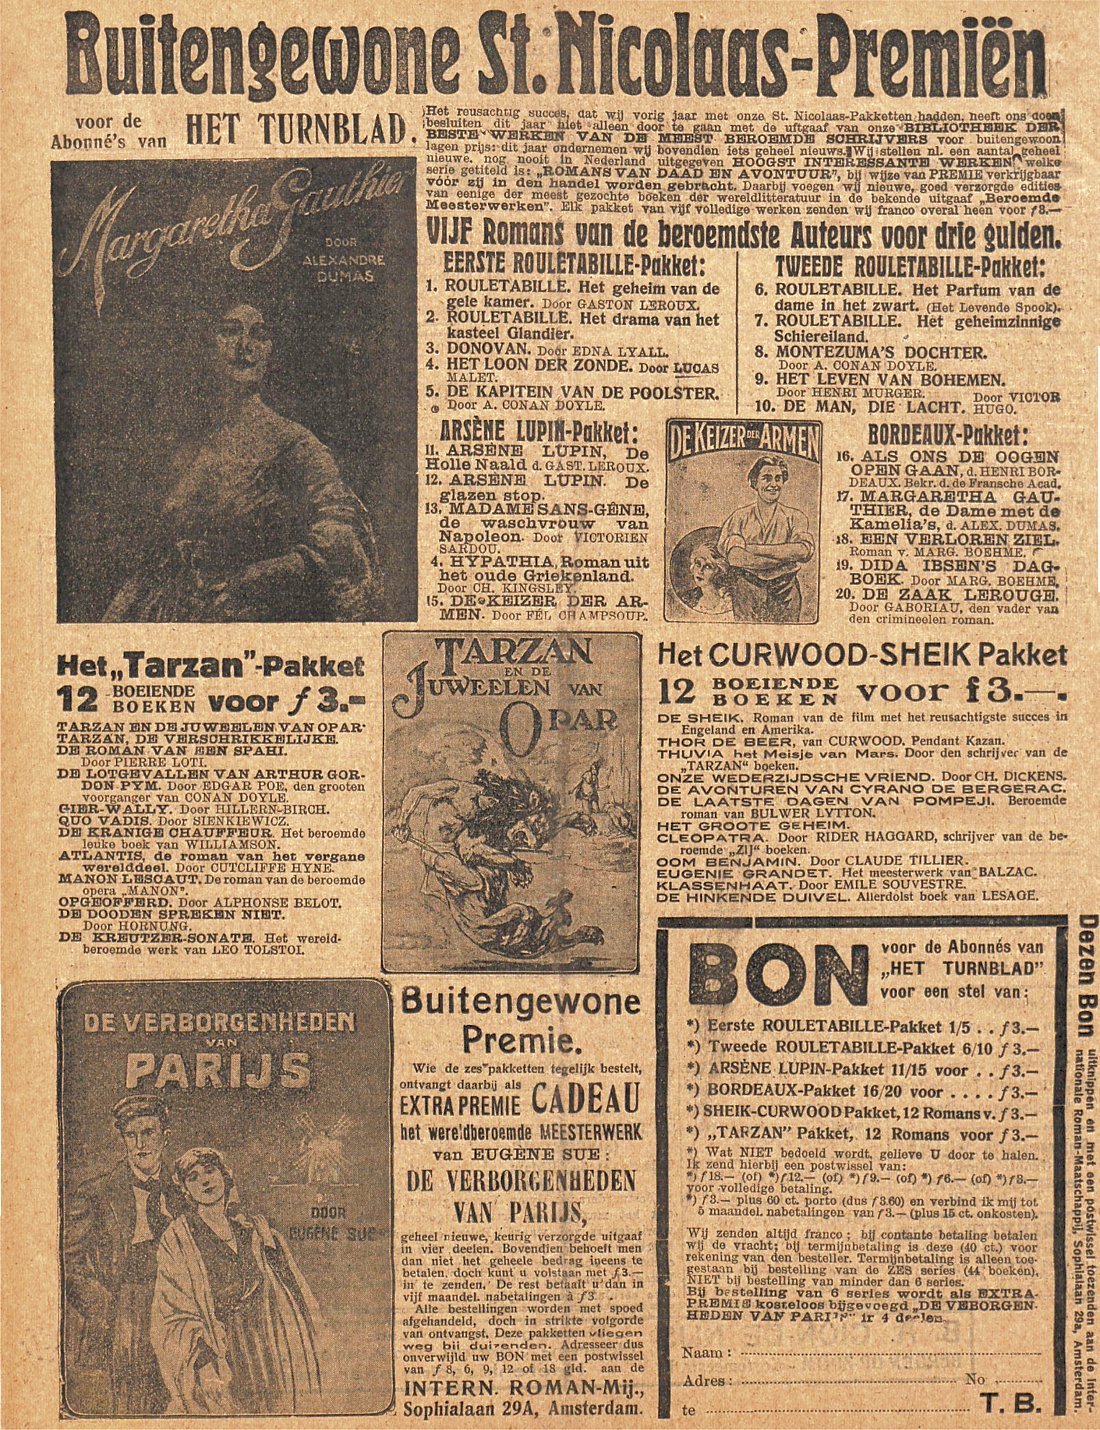 Advertentie in Het Turnblad van 17 november 1923